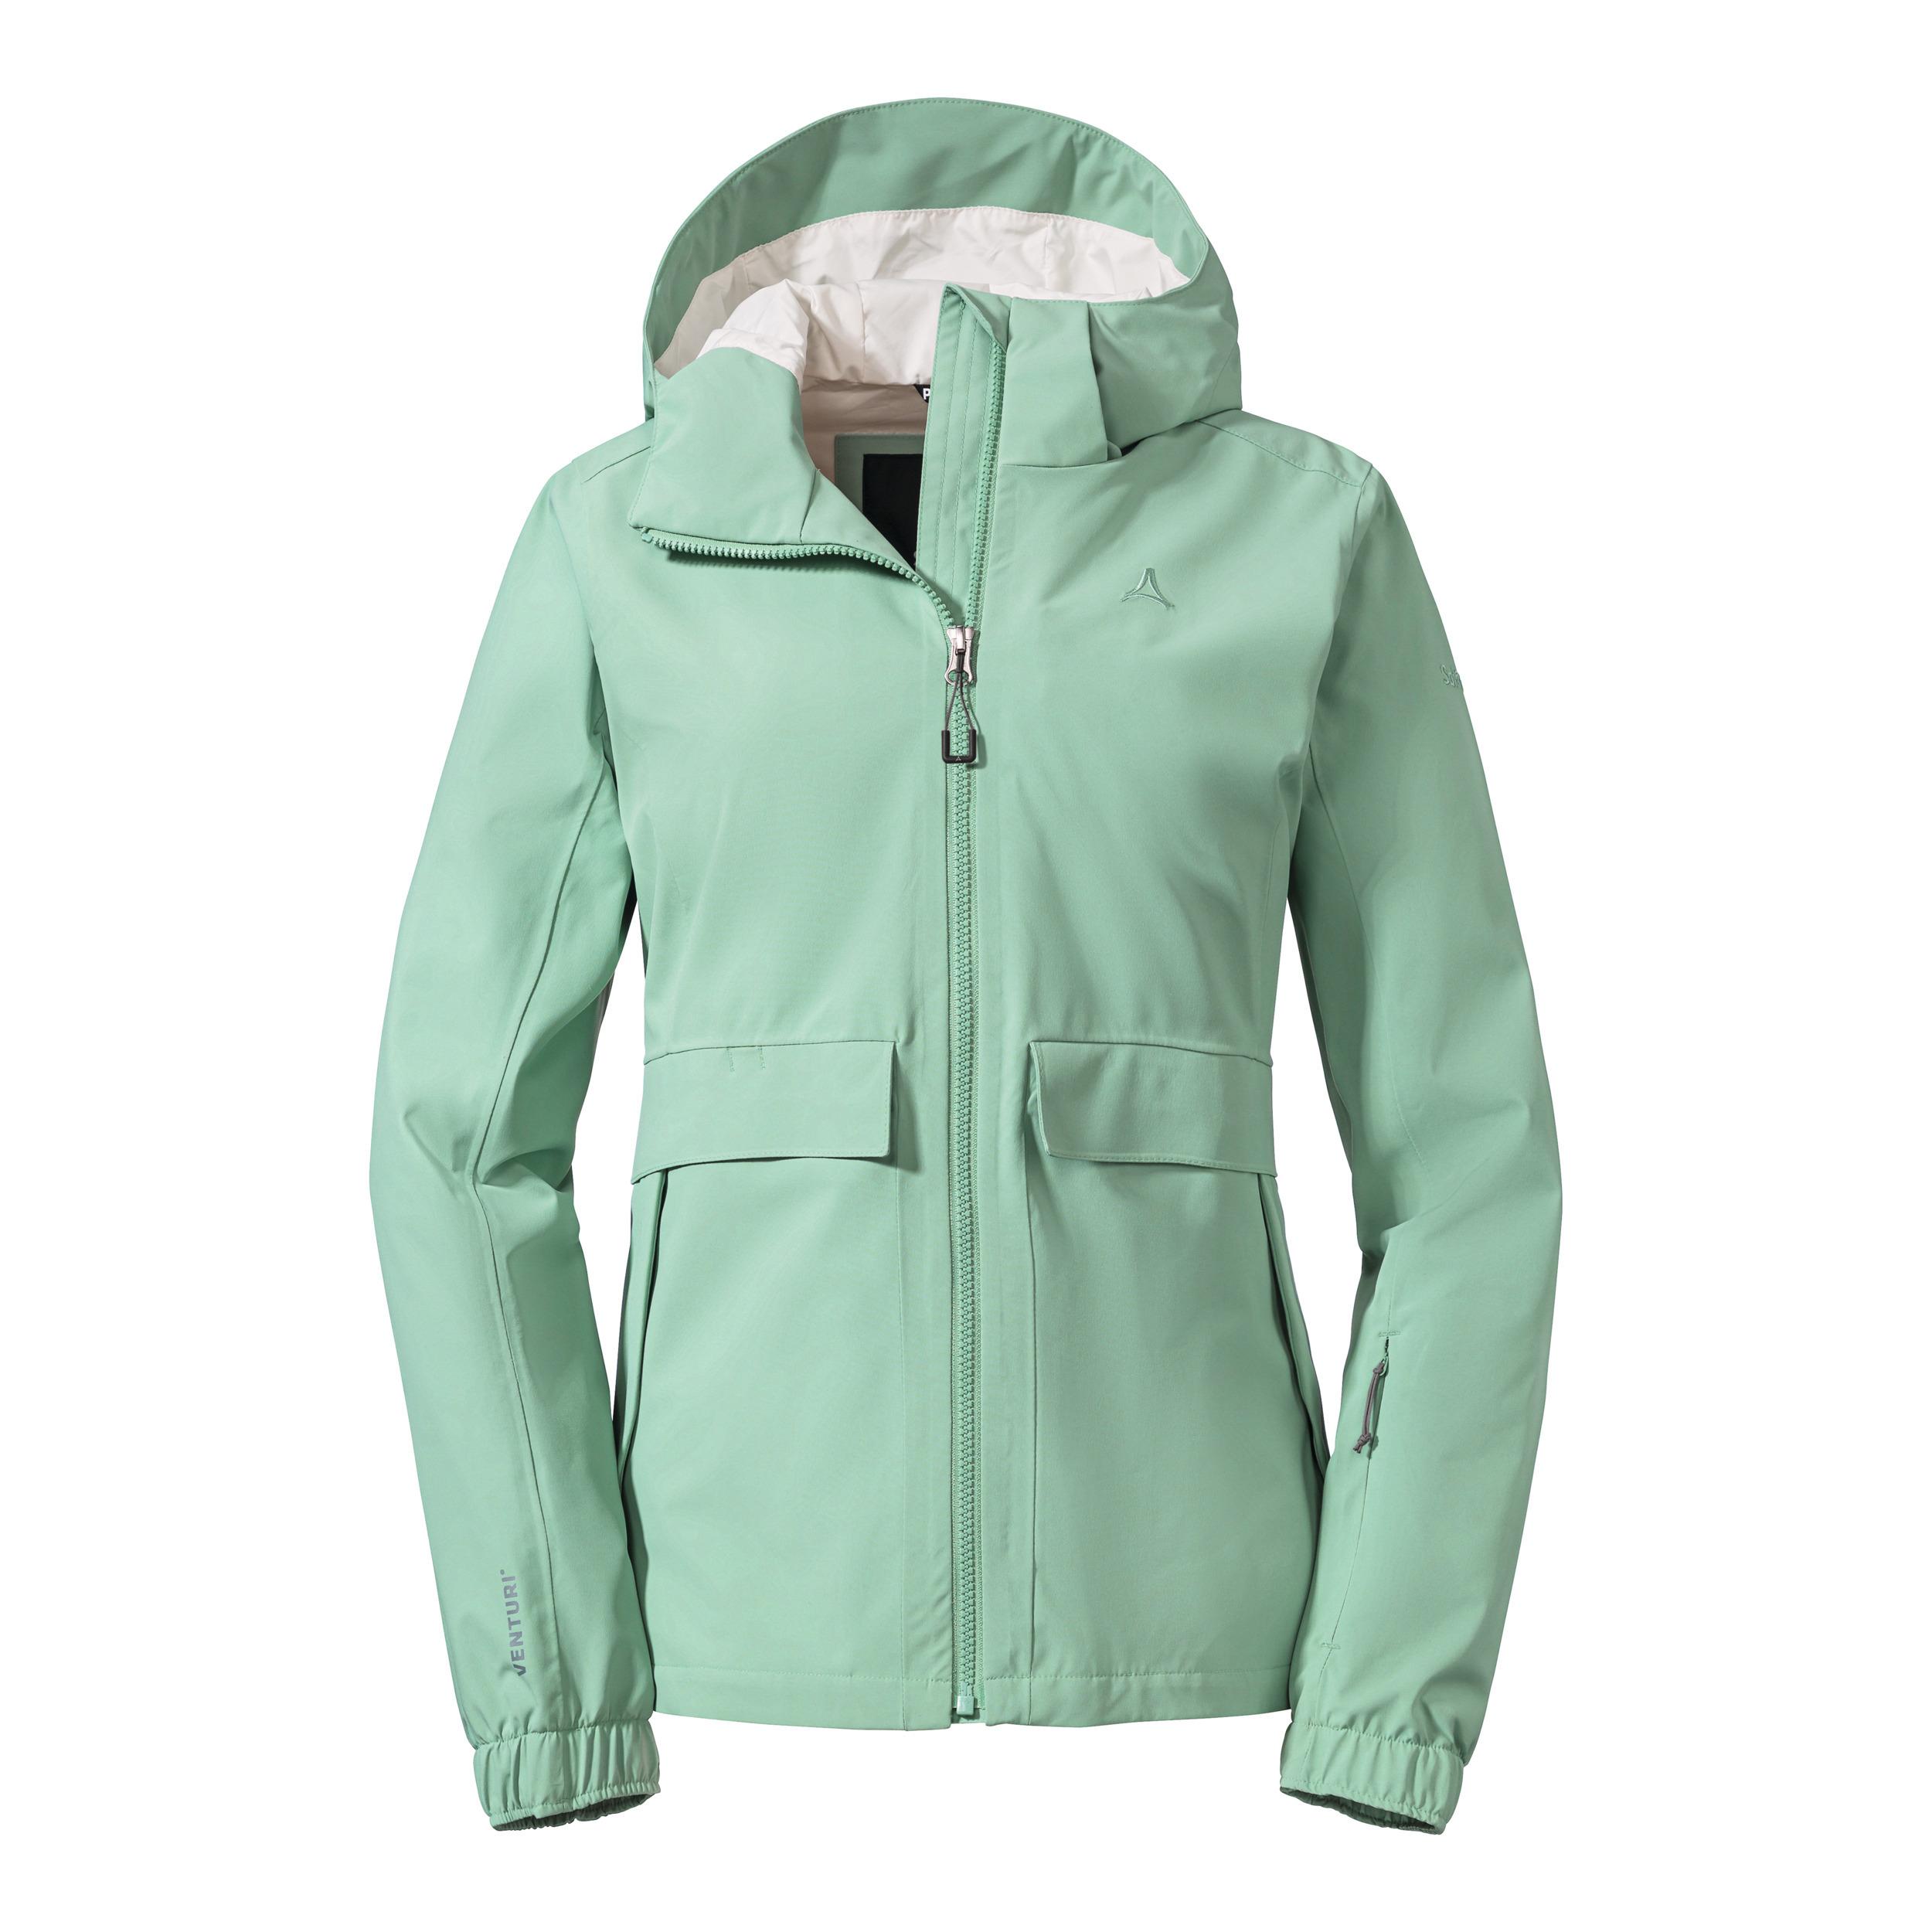 SportScheck Online grün kaufen - 6055 Shop Funktionsjacke im L Lausanne Jacket Damen Schöffel von